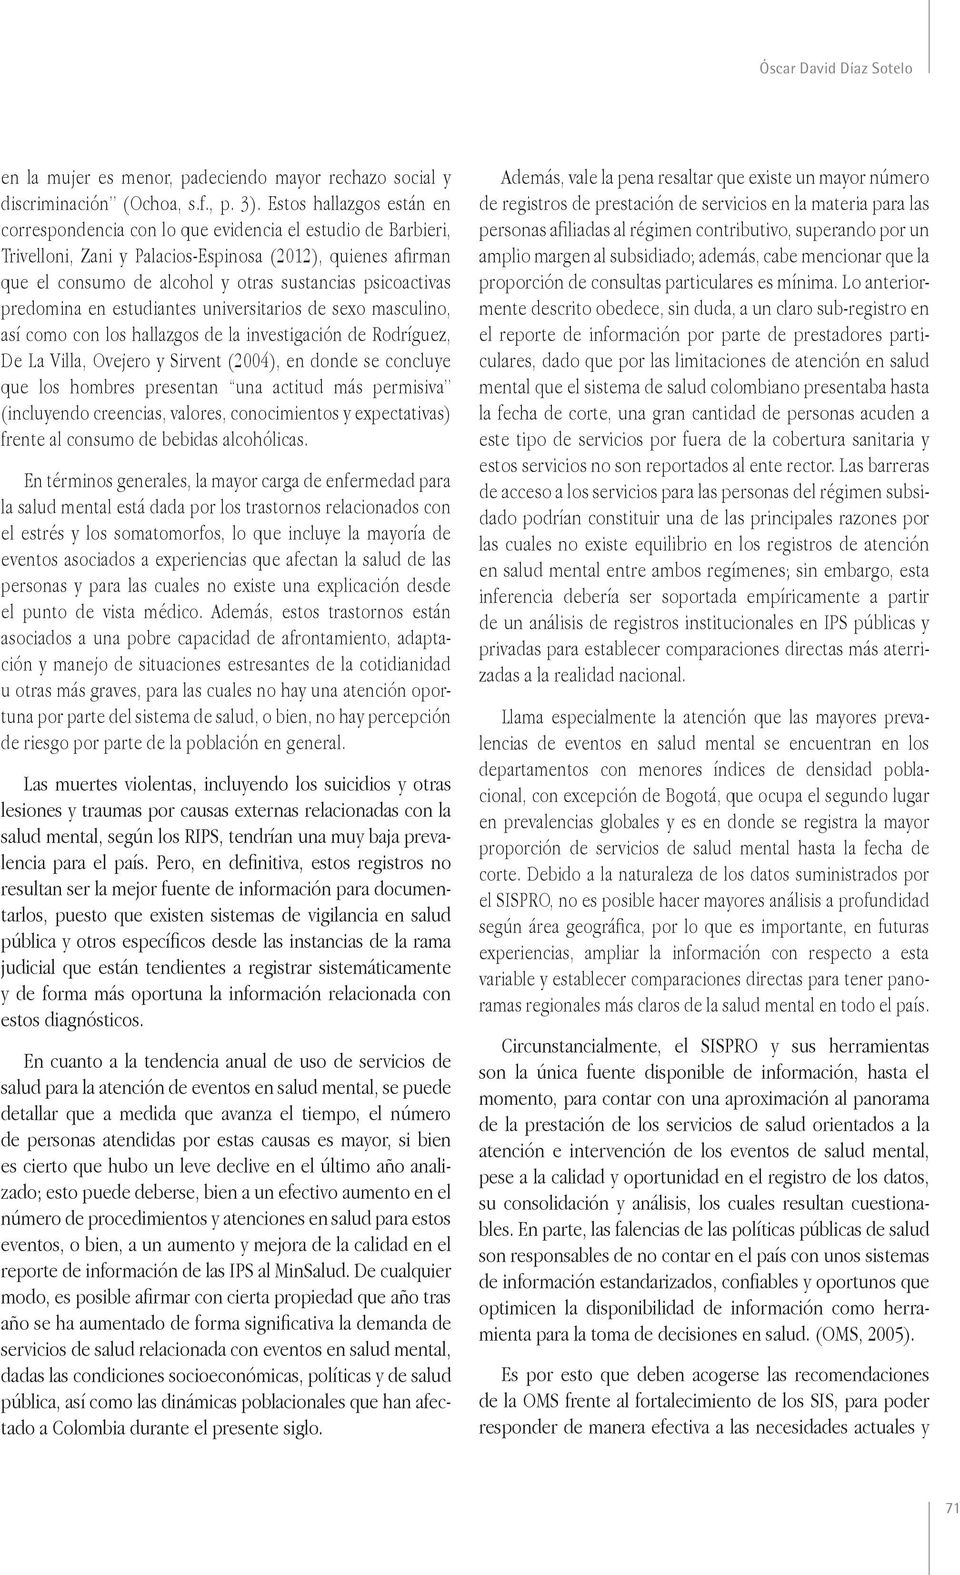 psicoactivas predomina en estudiantes universitarios de sexo masculino, así como con los hallazgos de la investigación de Rodríguez, De La Villa, Ovejero y Sirvent (2004), en donde se concluye que